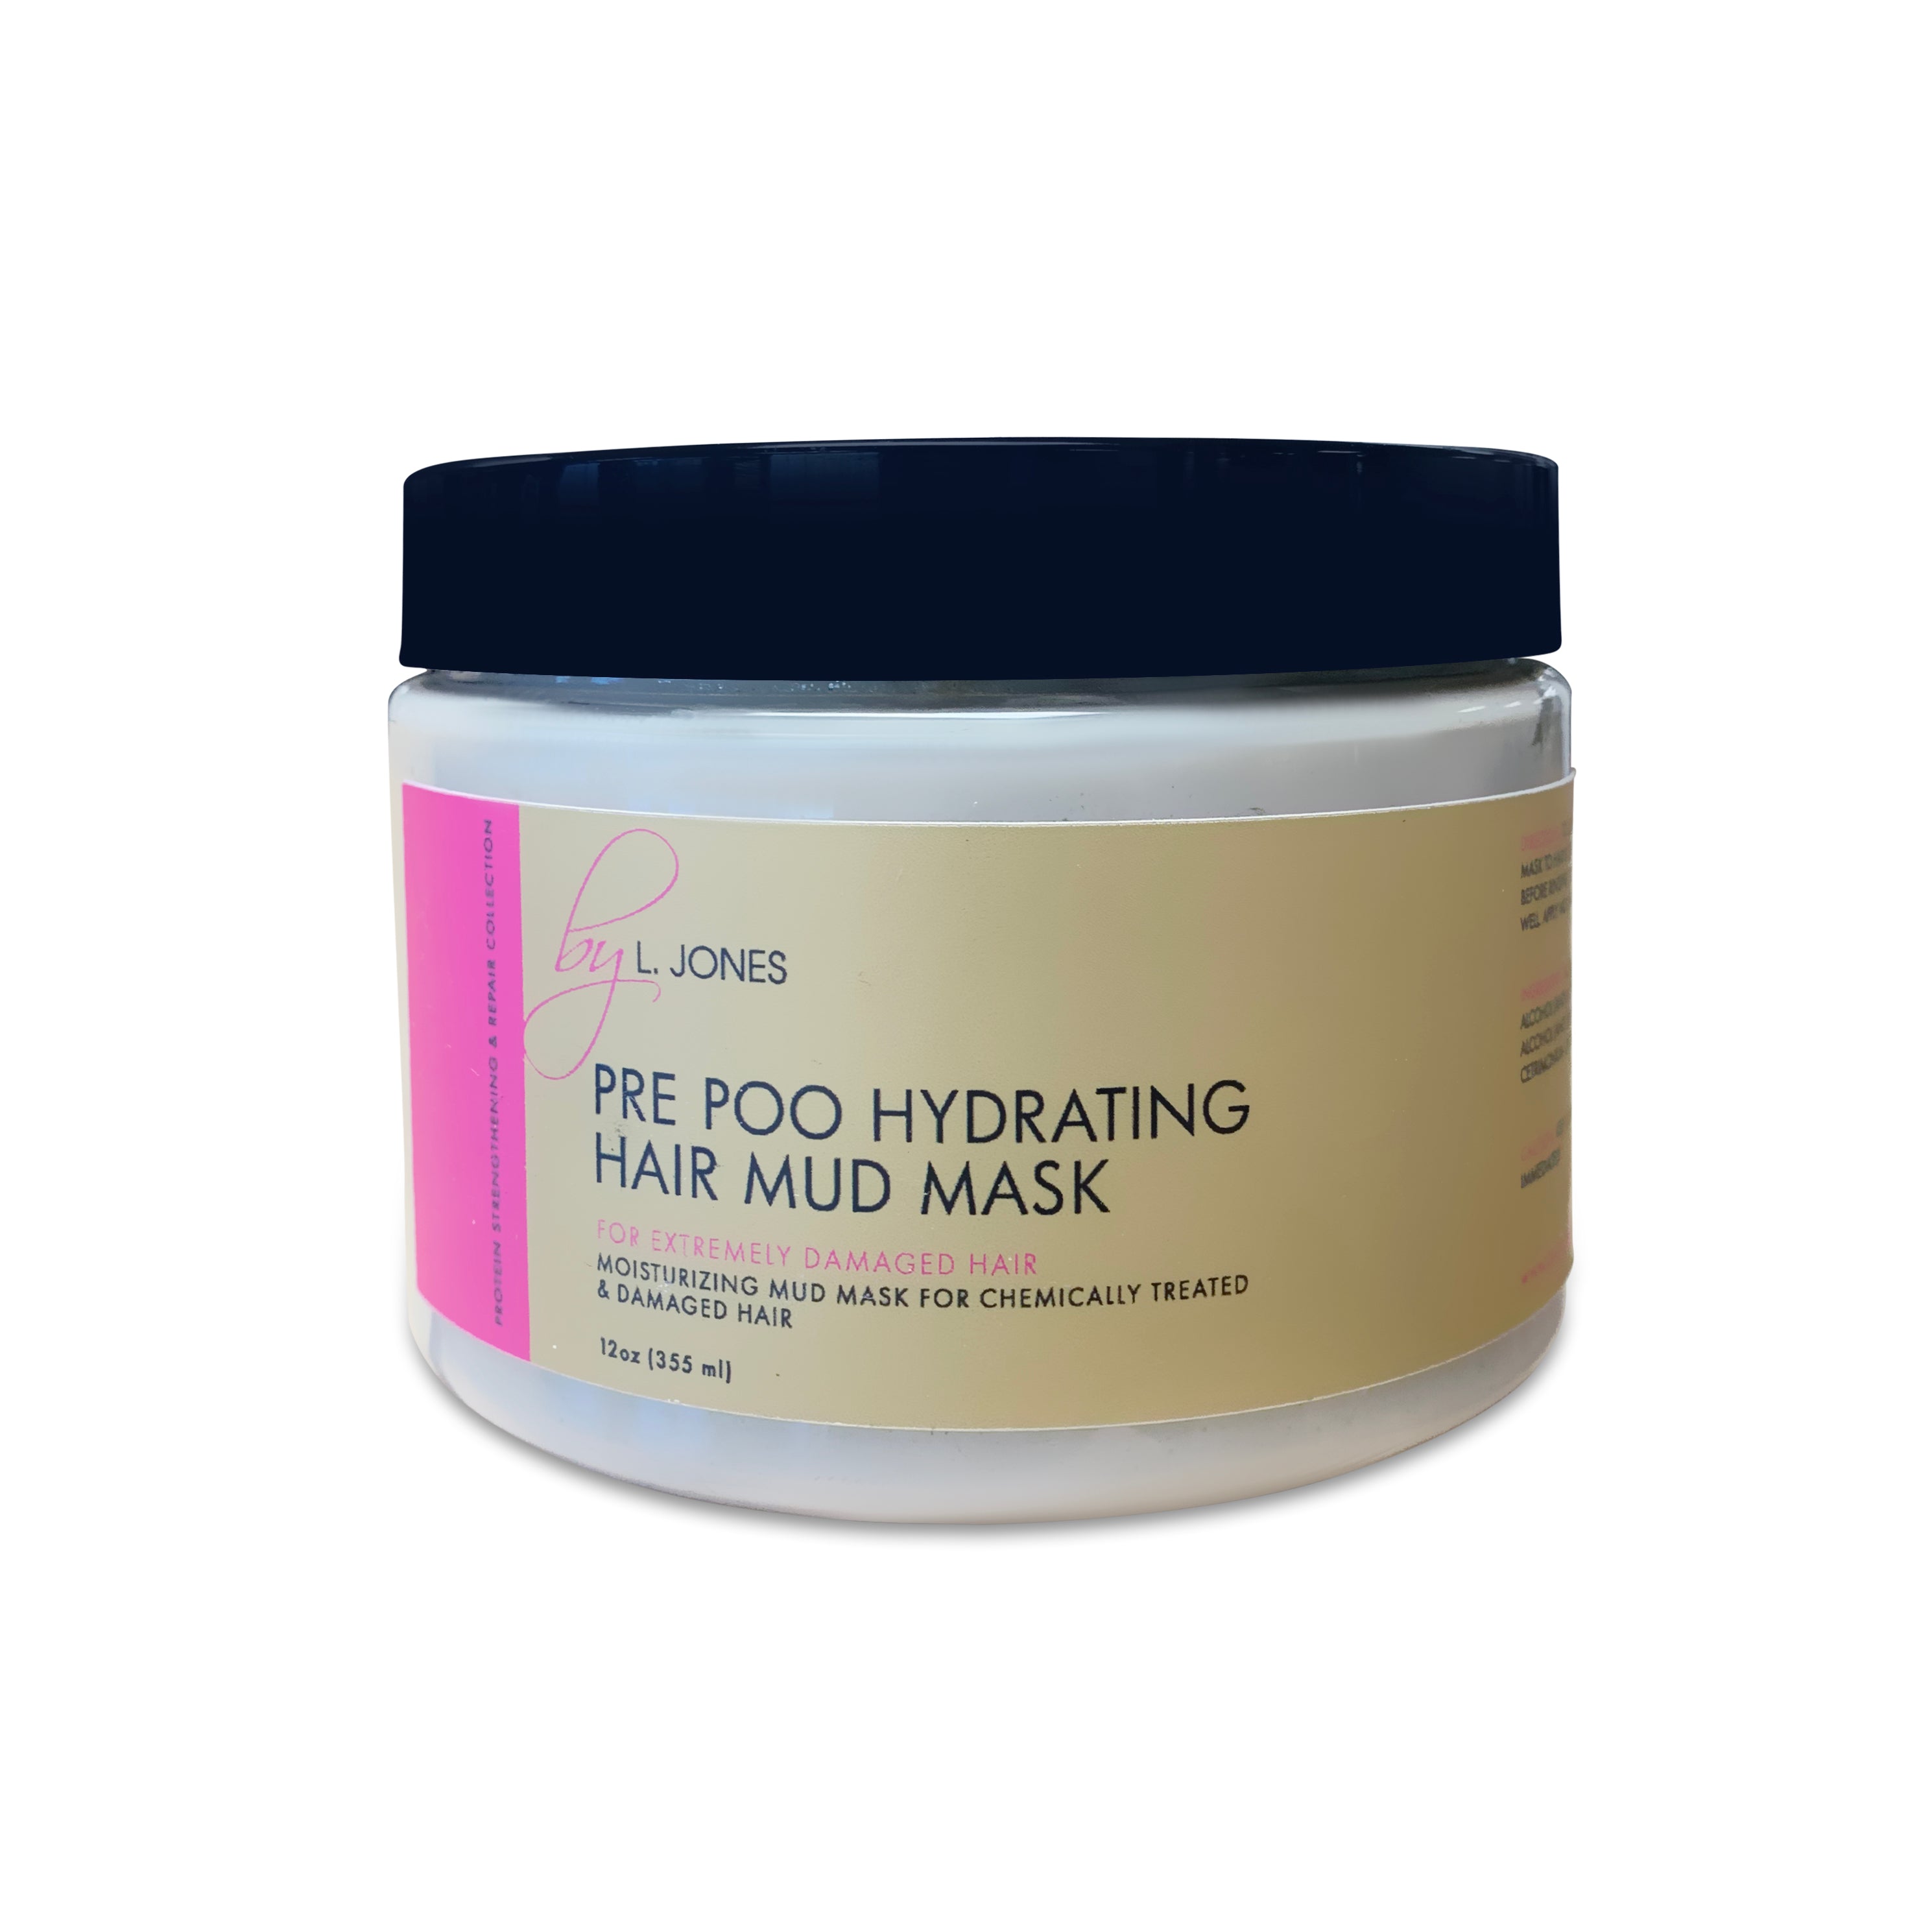 Pre Poo Hydrating Hair Mud Mask – by L. Jones